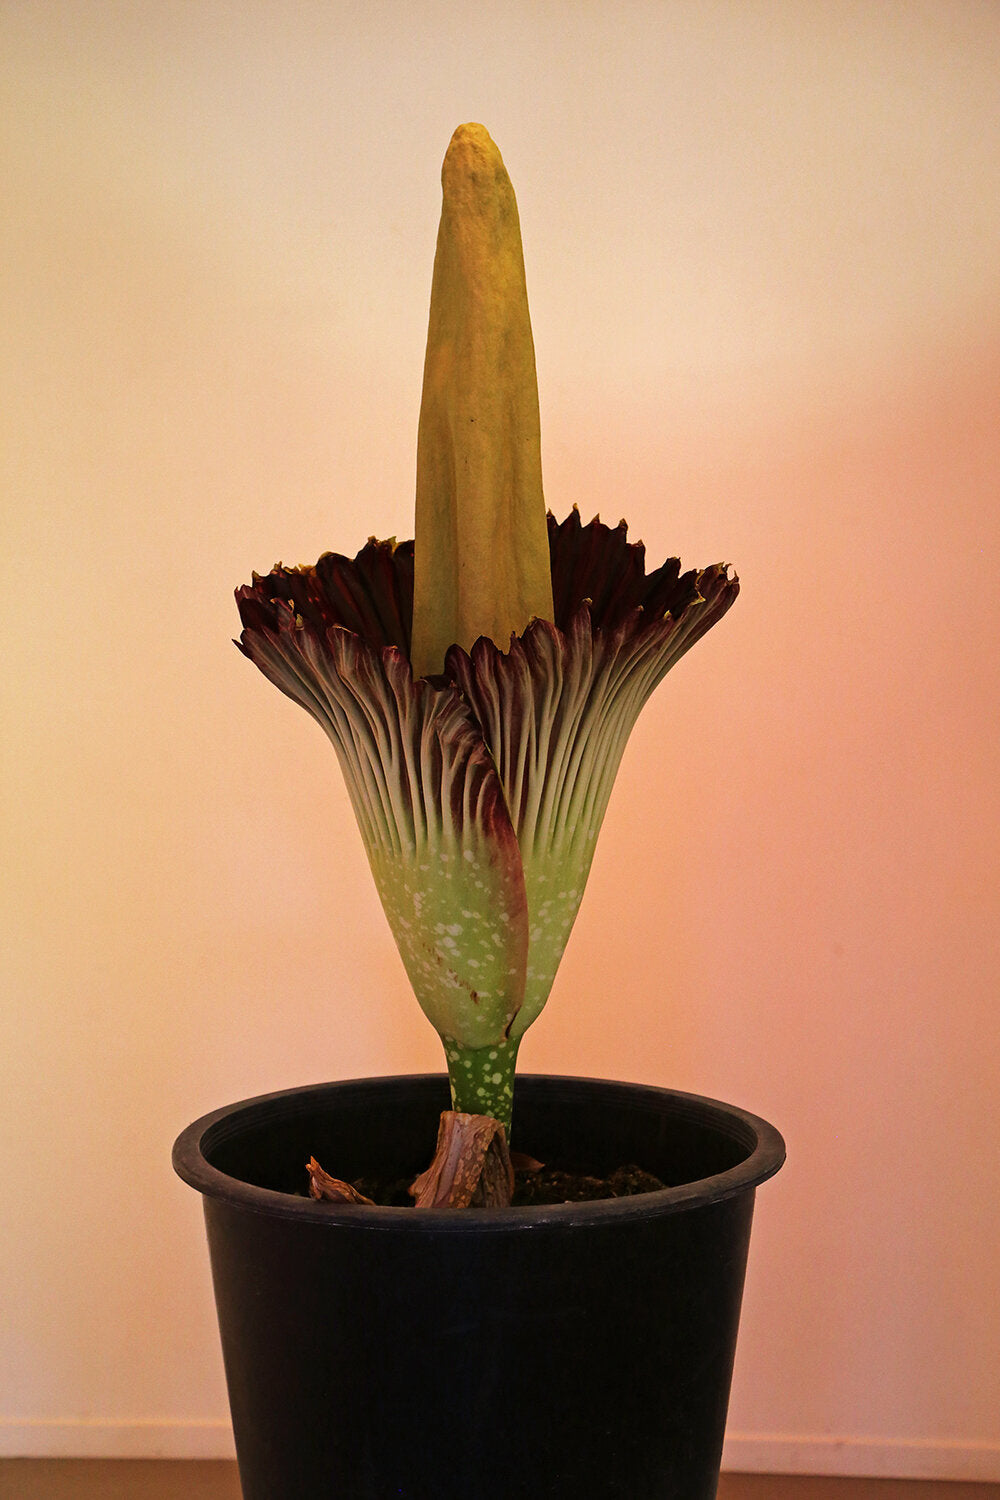 Amorphophallus titanum AKA corpse flower bloom